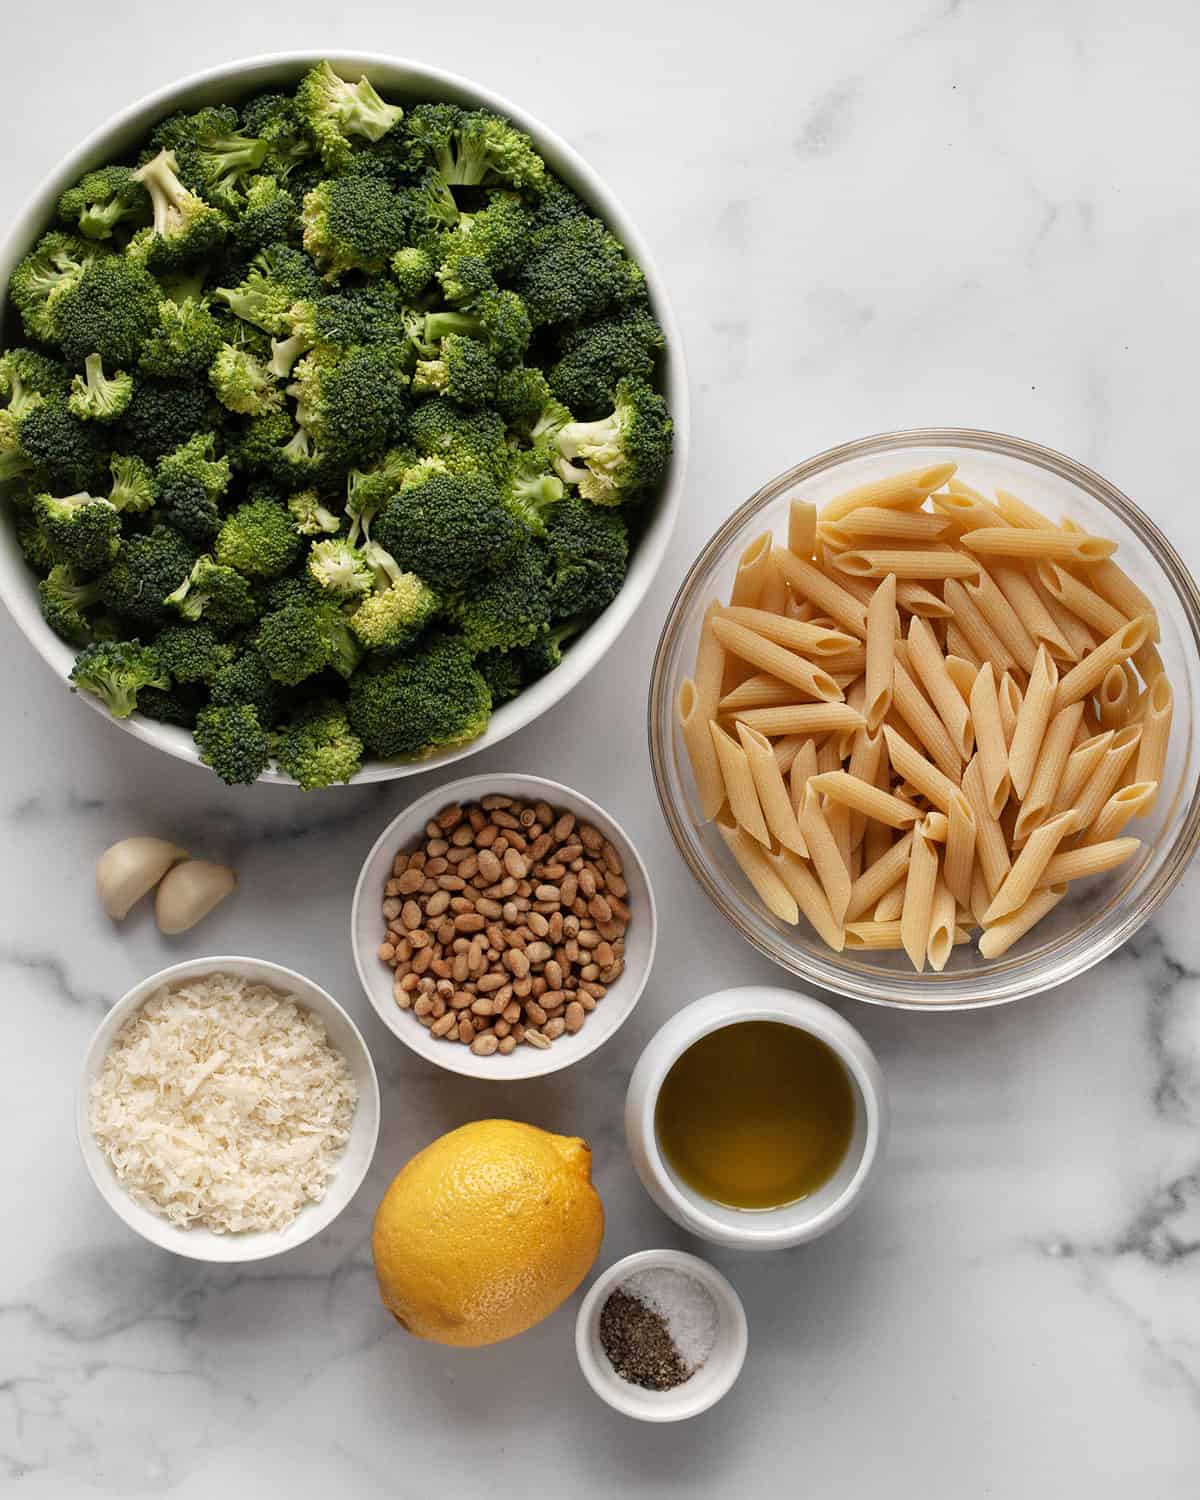 Ingredients including broccoli, penne, pine nuts, parmesan, olive oil, lemon, garlic, salt and pepper.